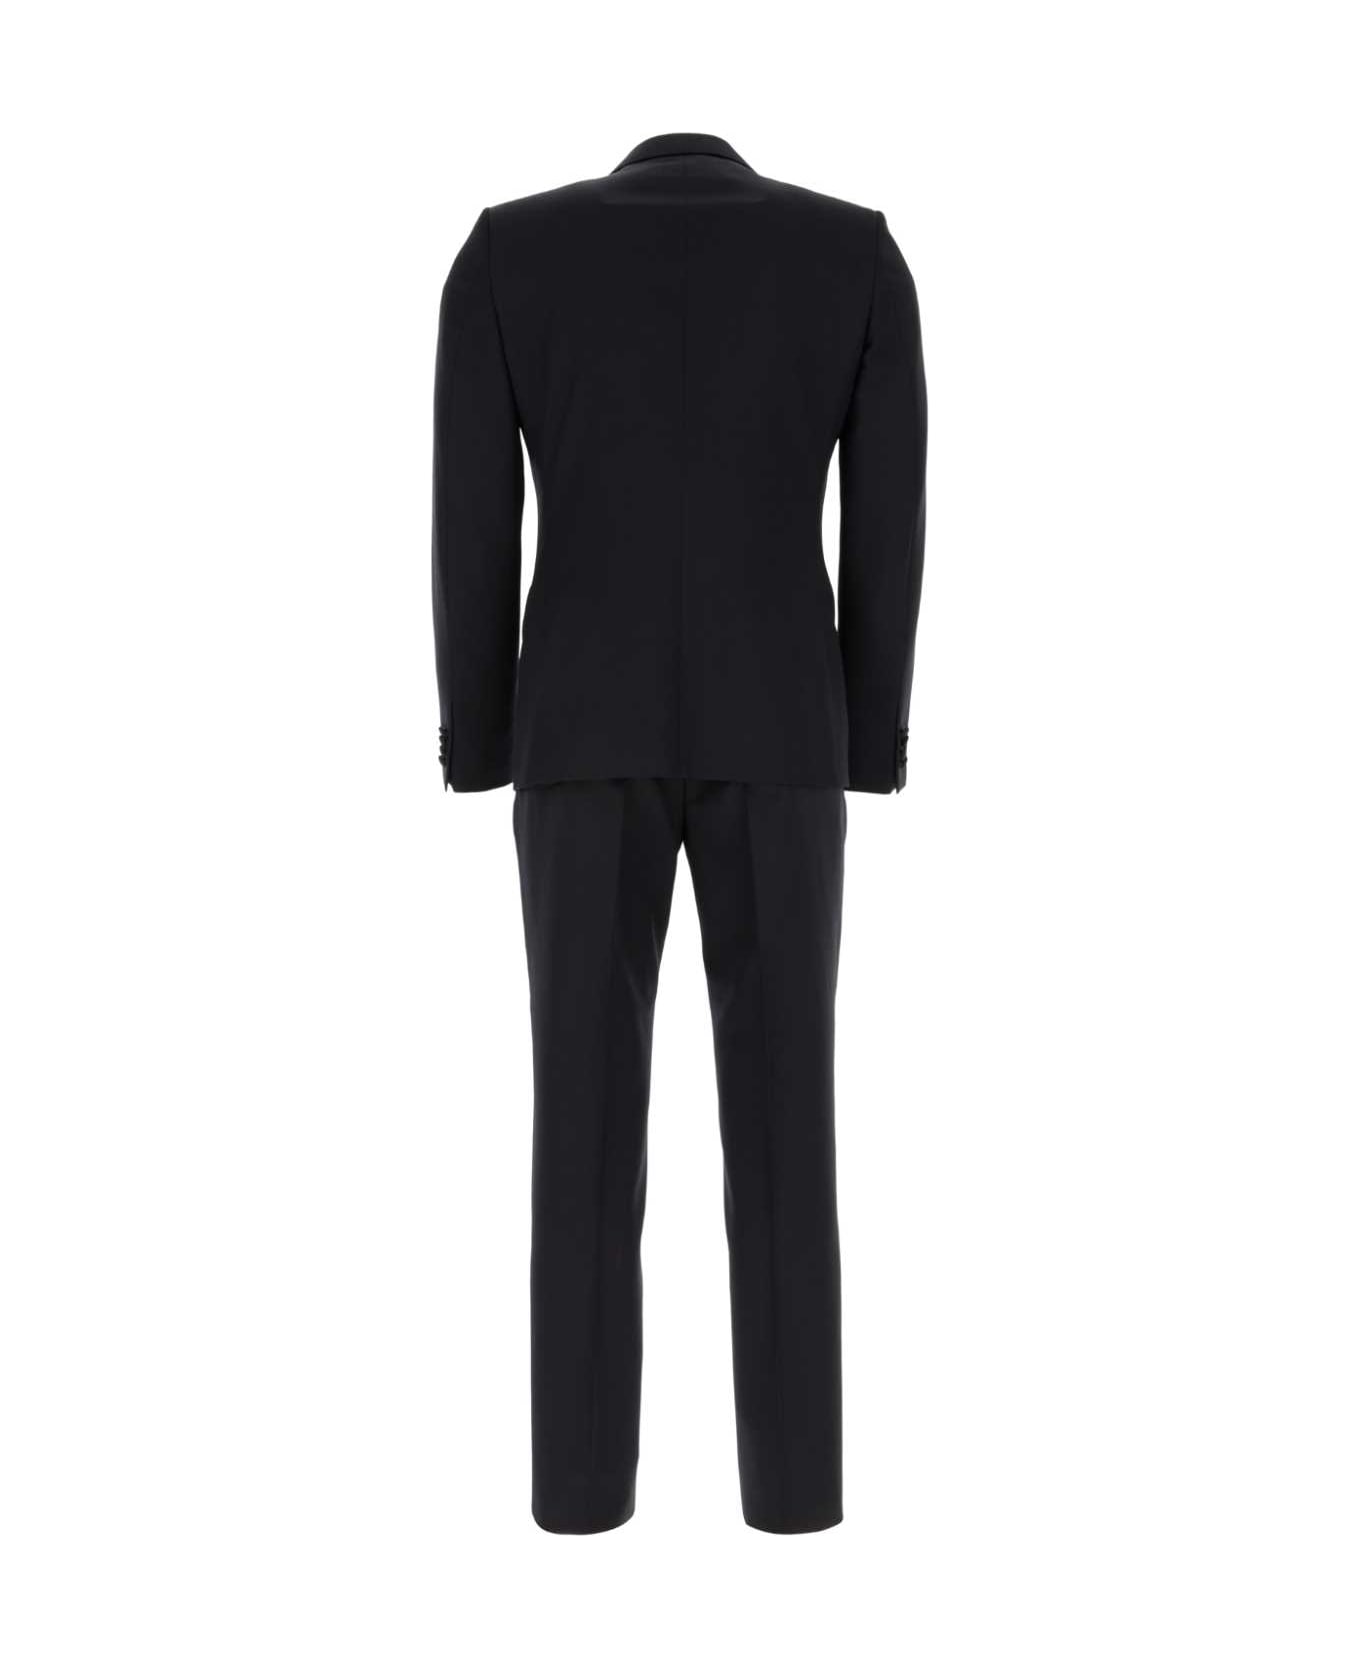 Zegna Black Wool Blend Suit - 8R